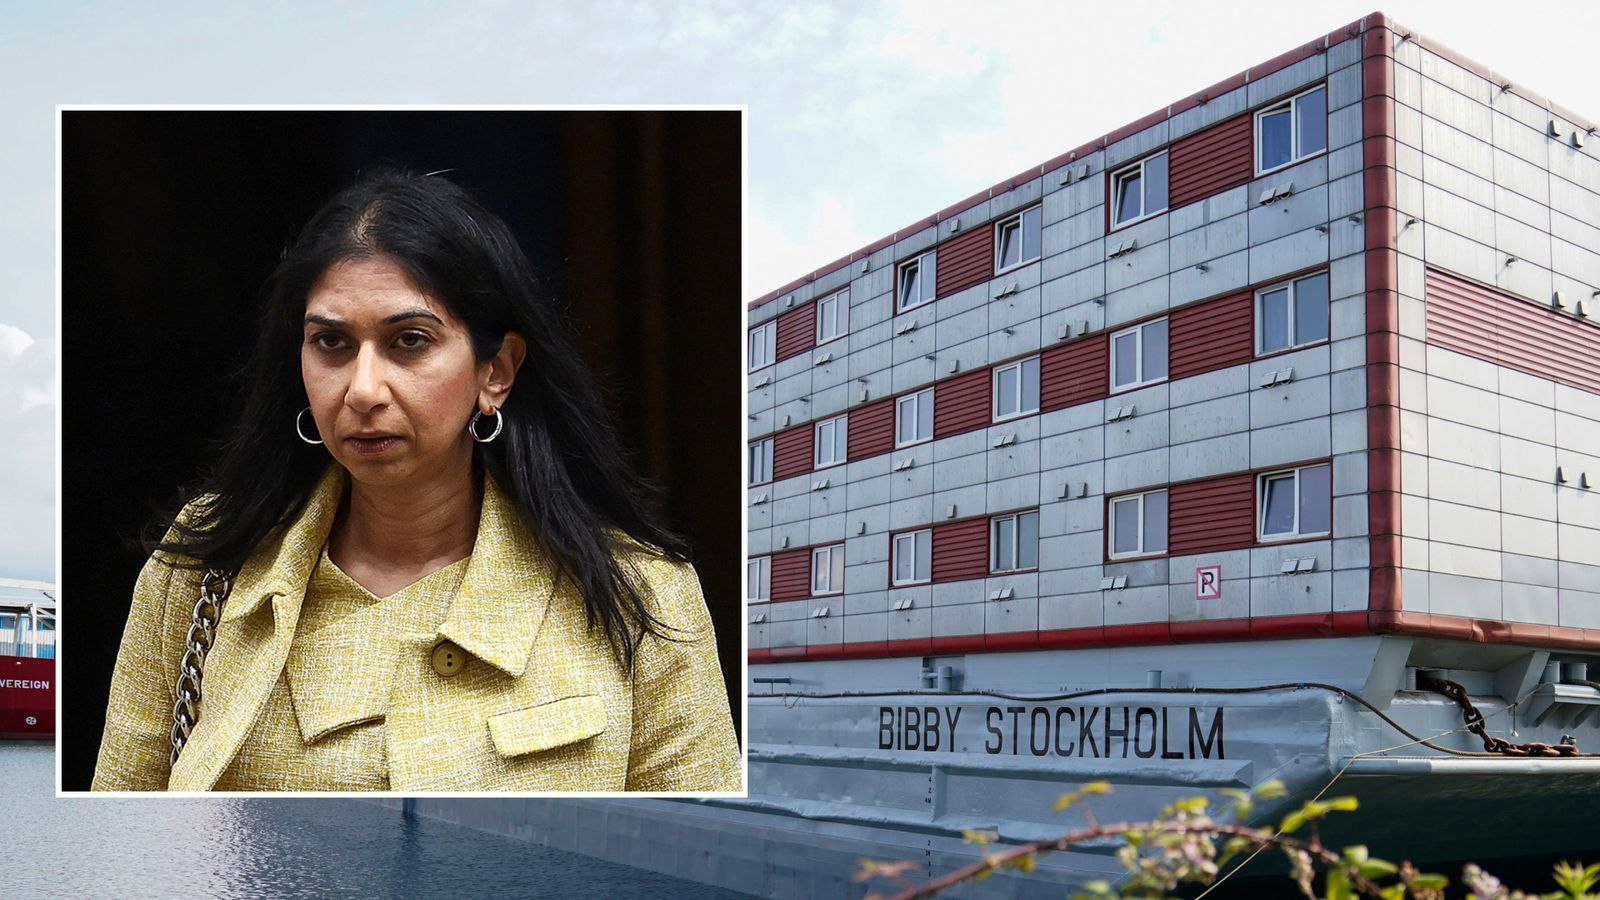 Bibby Stockholm: Rishi Sunak still has 'confidence' in Home Secretary Suella Braverman despite Legionella discovery